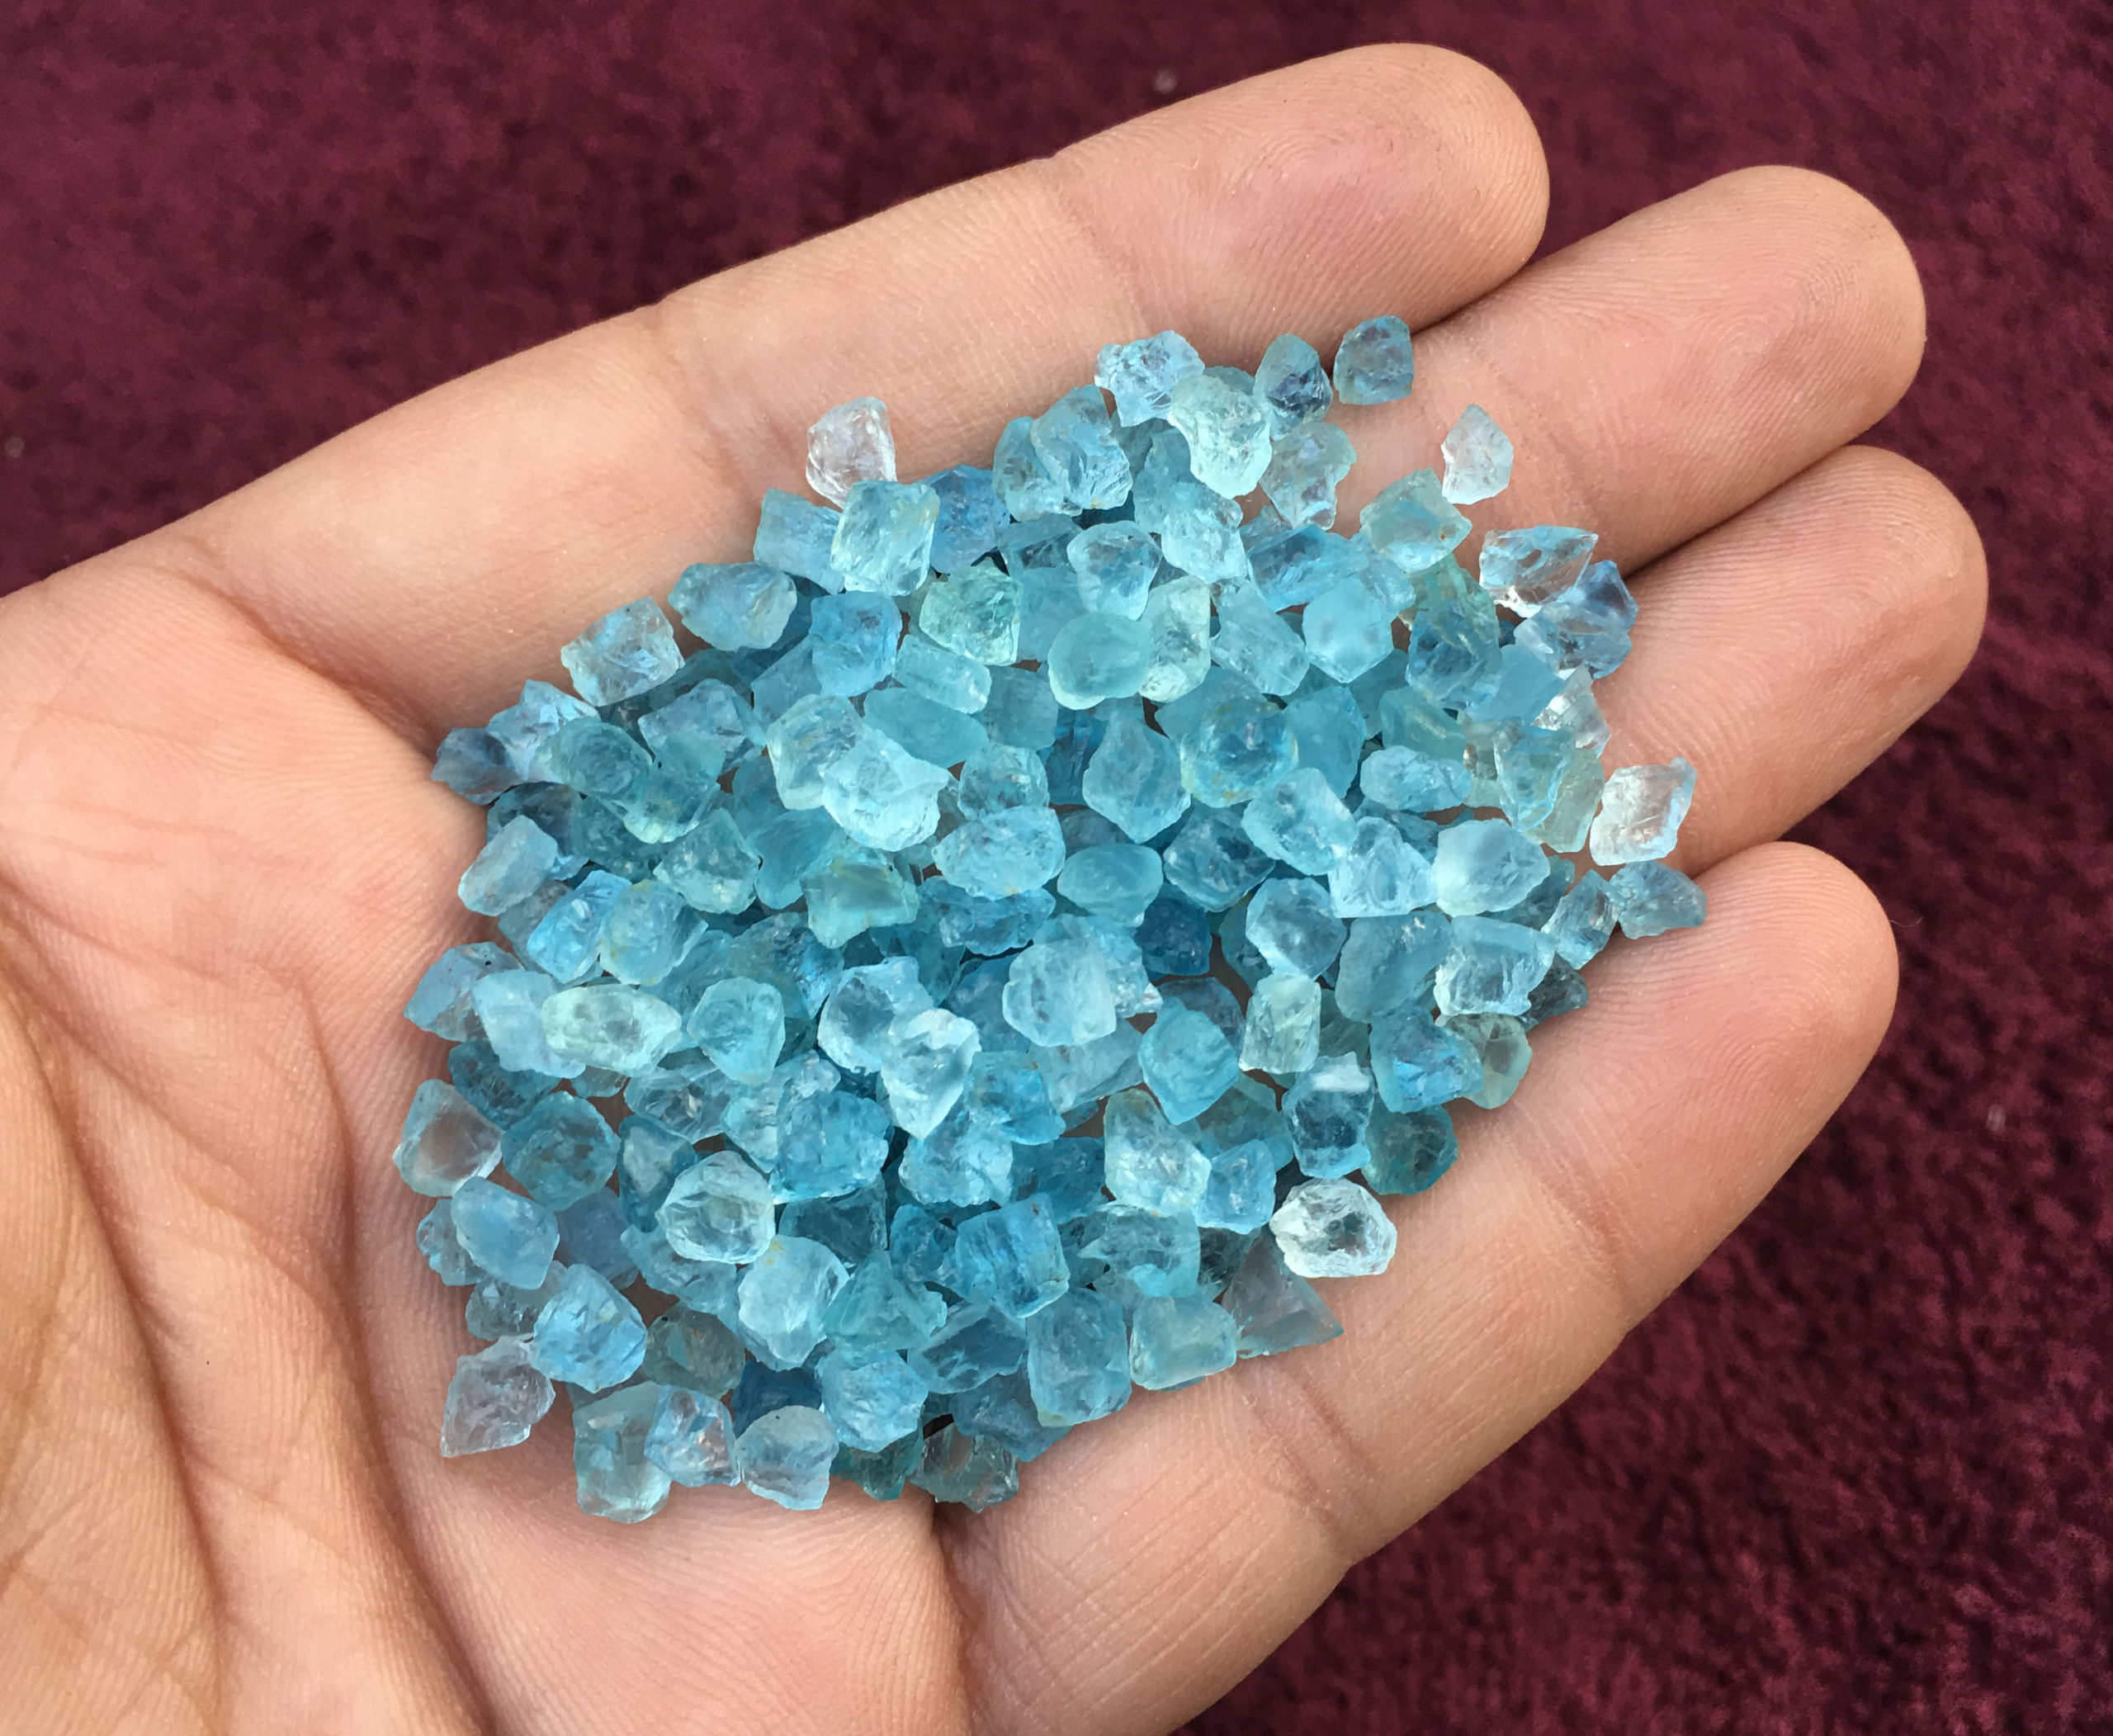 50 Pieces Natural Rough Stones, Size 2-4 Mm Aquamarine Raw Stones, Blue Aquamarine Crystals Raw, Unpolished Aquamarine Rough, Genuine Aqua Raw